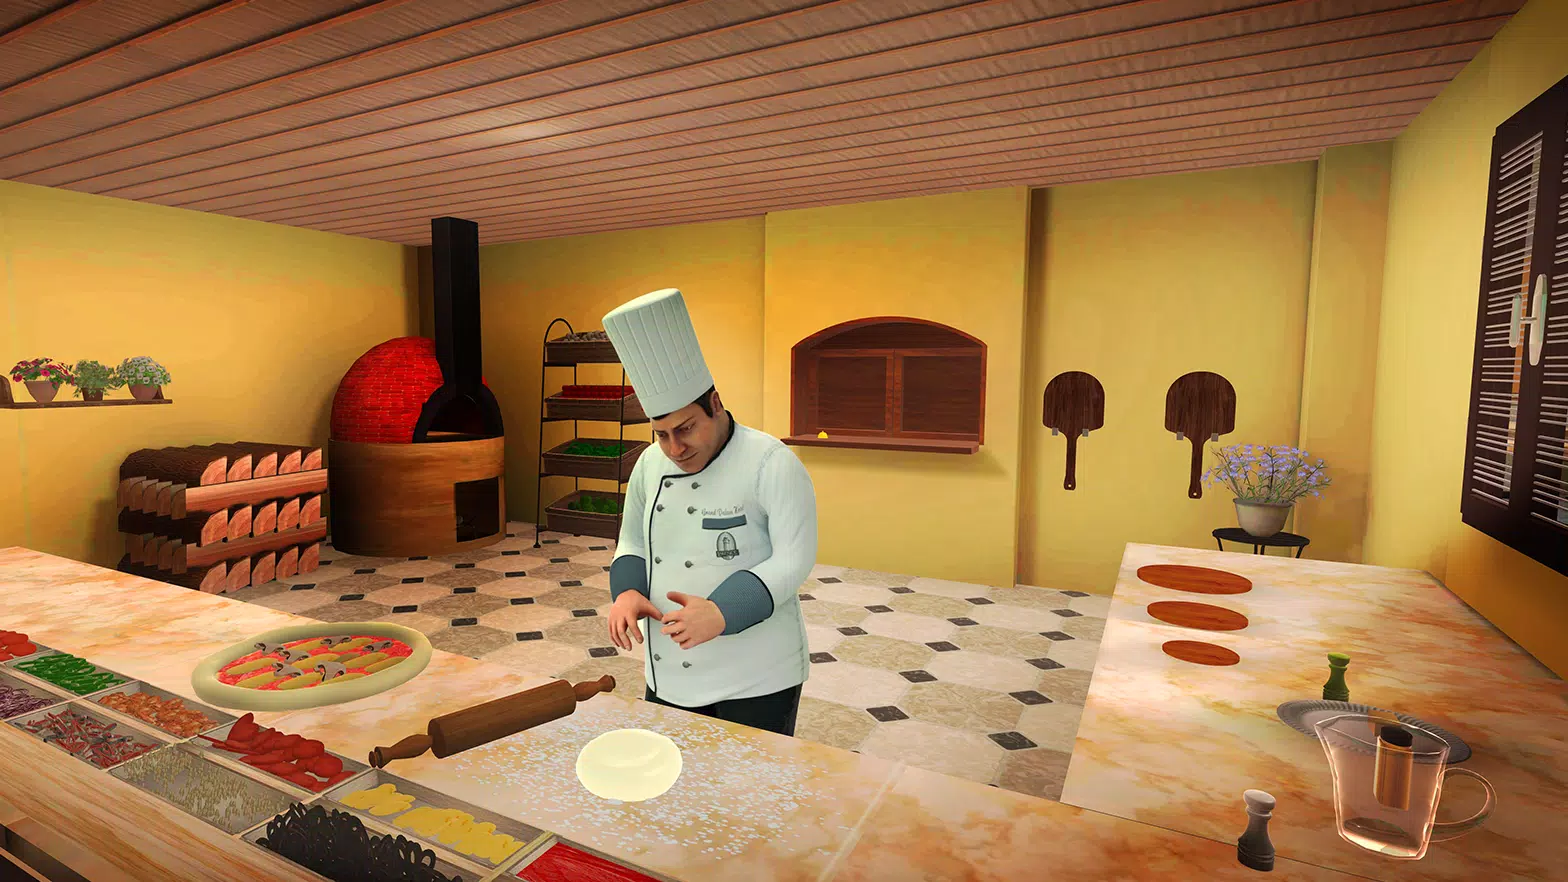 Download do APK de Restaurante - Jogos de Pizza para Android